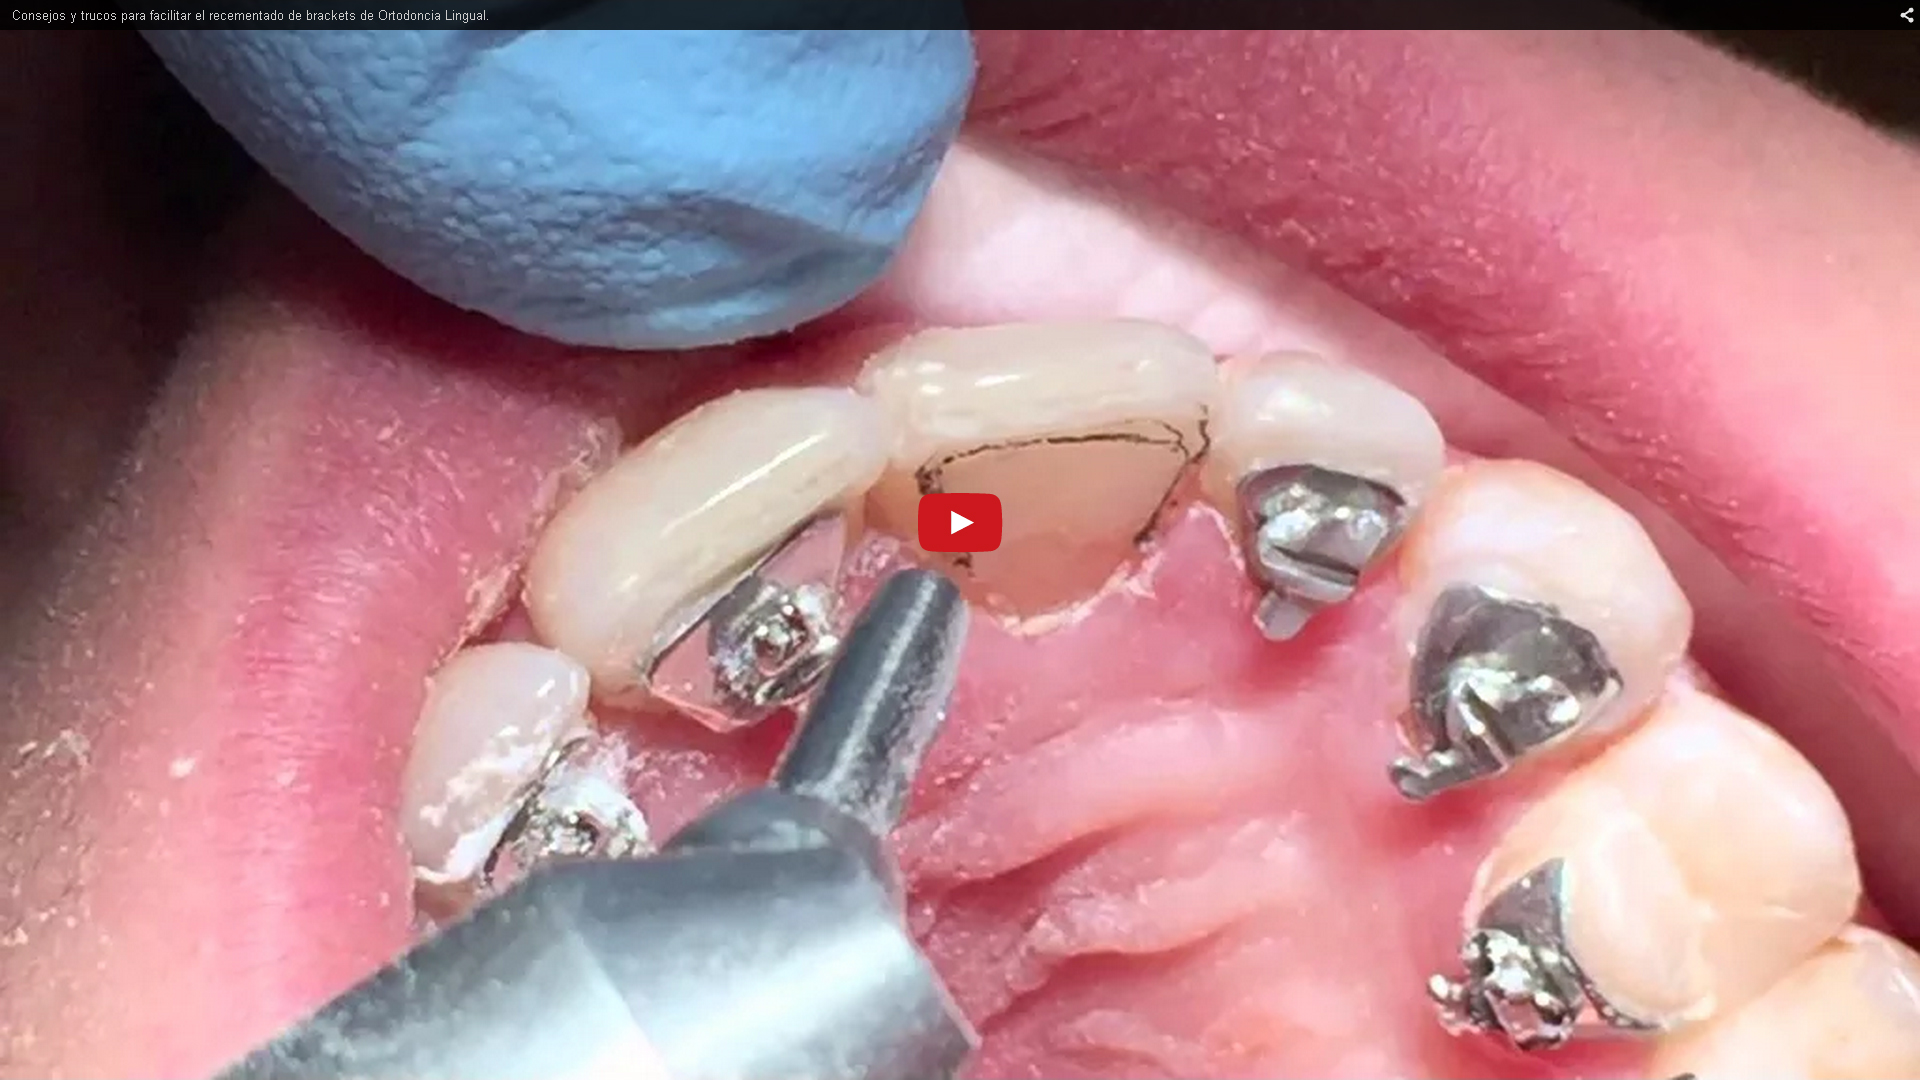 Trucos para el recementado de los brackets linguales|Clínica Dental Ortoperio